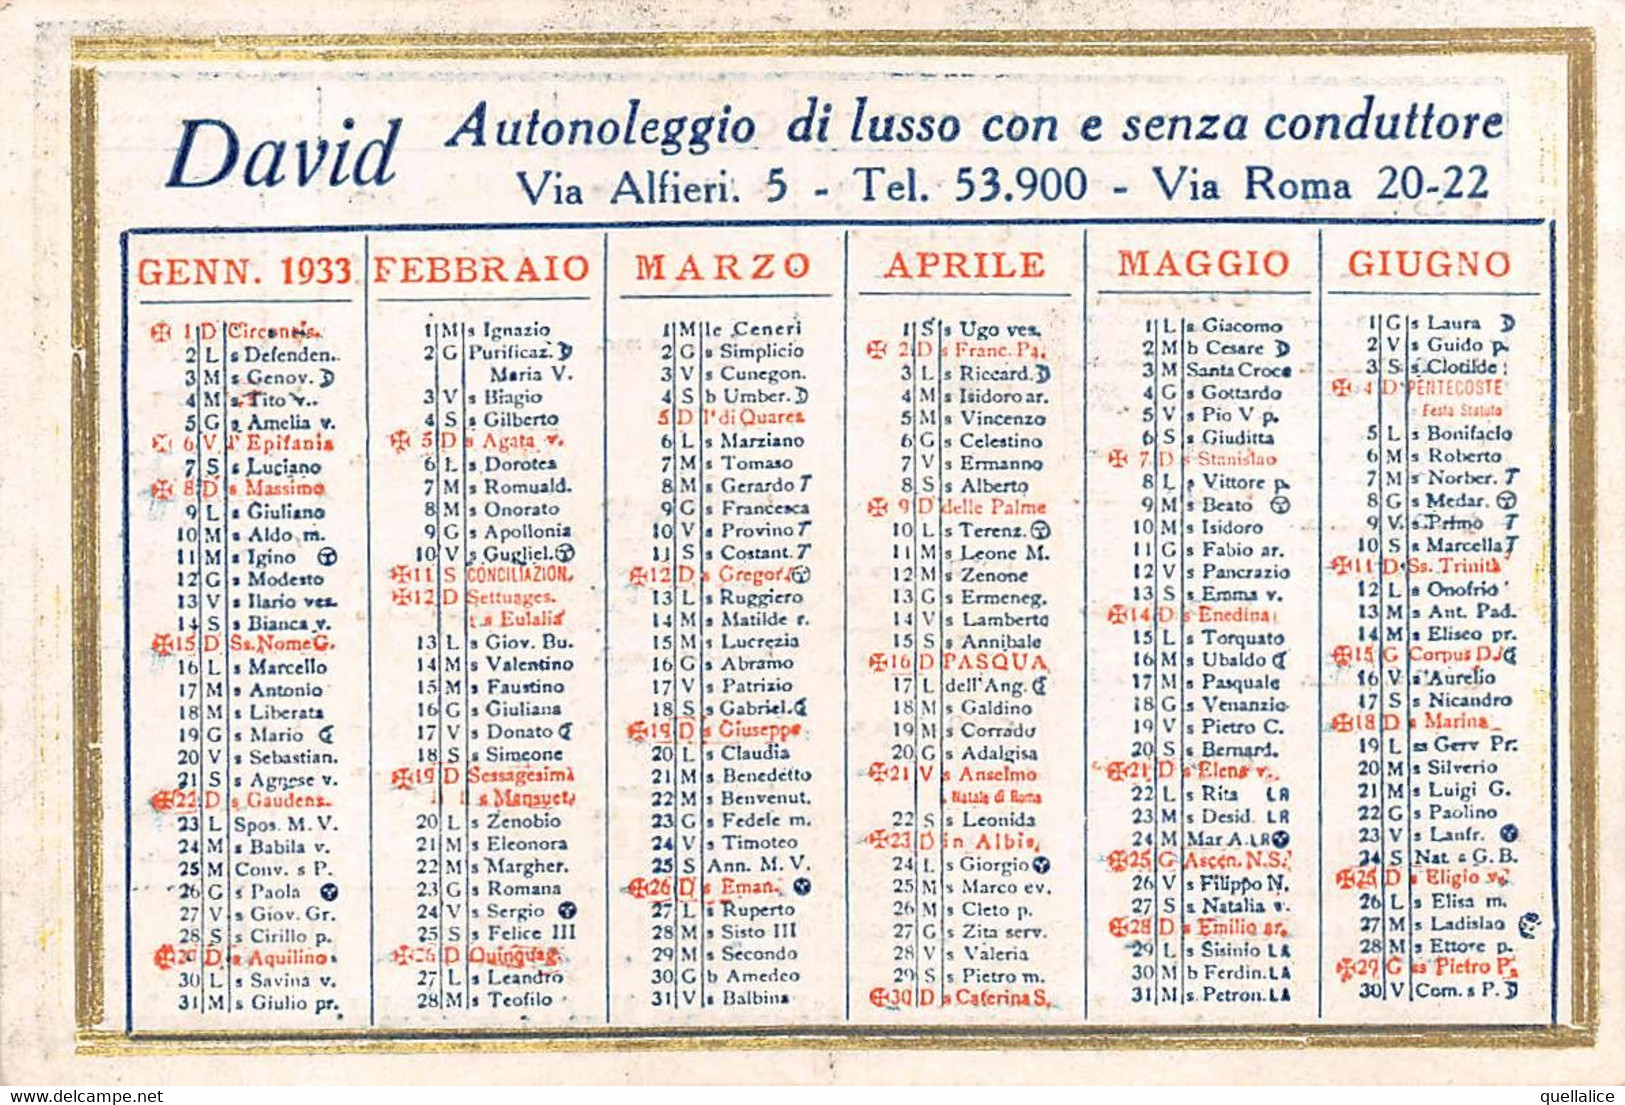 02089 "TORINO - DAVID AUTONOLEGGIO DI LUSSO CON E SENZA CONDUTTORE - CALENDARIETTO 1933" ORIG - Big : 1921-40